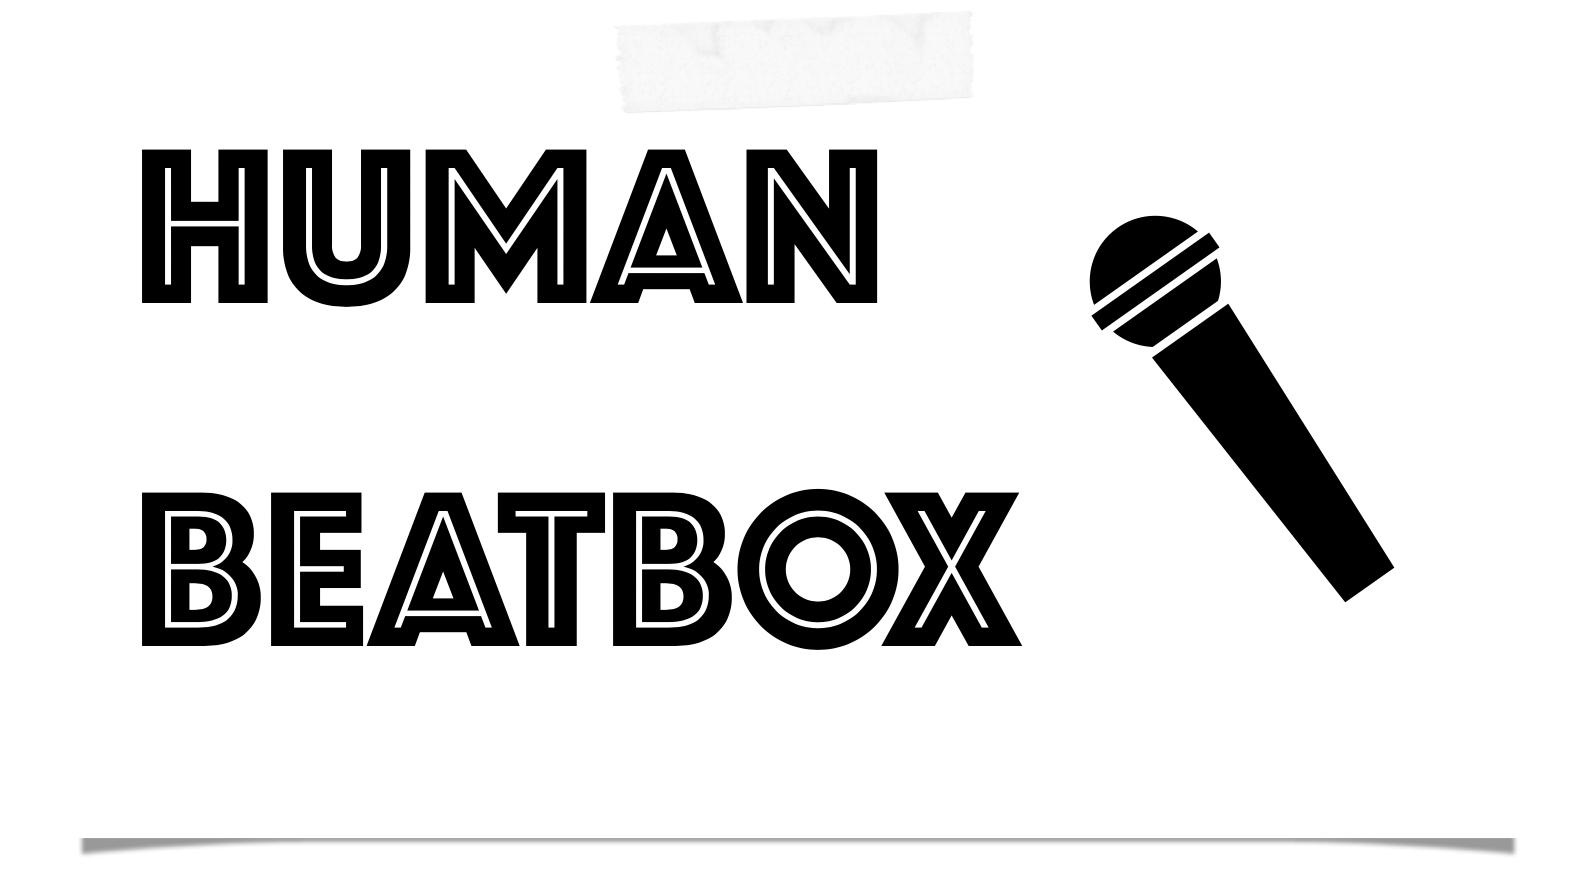 ヒューマンビートボックス Humanbeatbox 用の機材をお探しなら当店へ 必要な機材をおススメを交えて一挙紹介 名古屋パルコ店 店舗情報 島村楽器